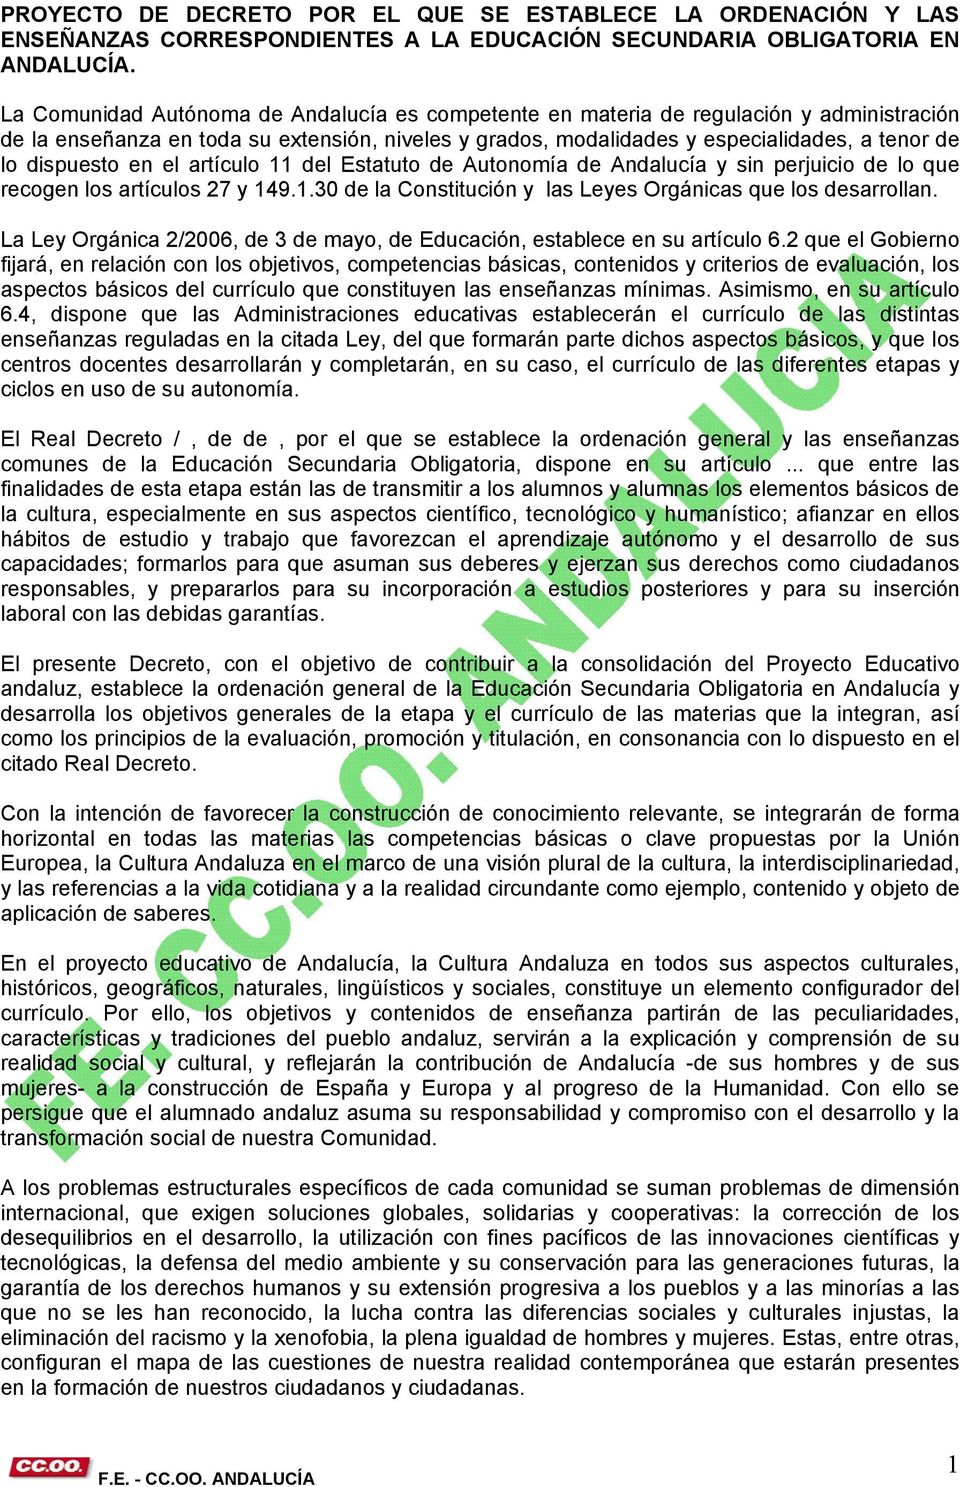 dispuesto en el artículo 11 del Estatuto de Autonomía de Andalucía y sin perjuicio de lo que recogen los artículos 27 y 149.1.30 de la Constitución y las Leyes Orgánicas que los desarrollan.